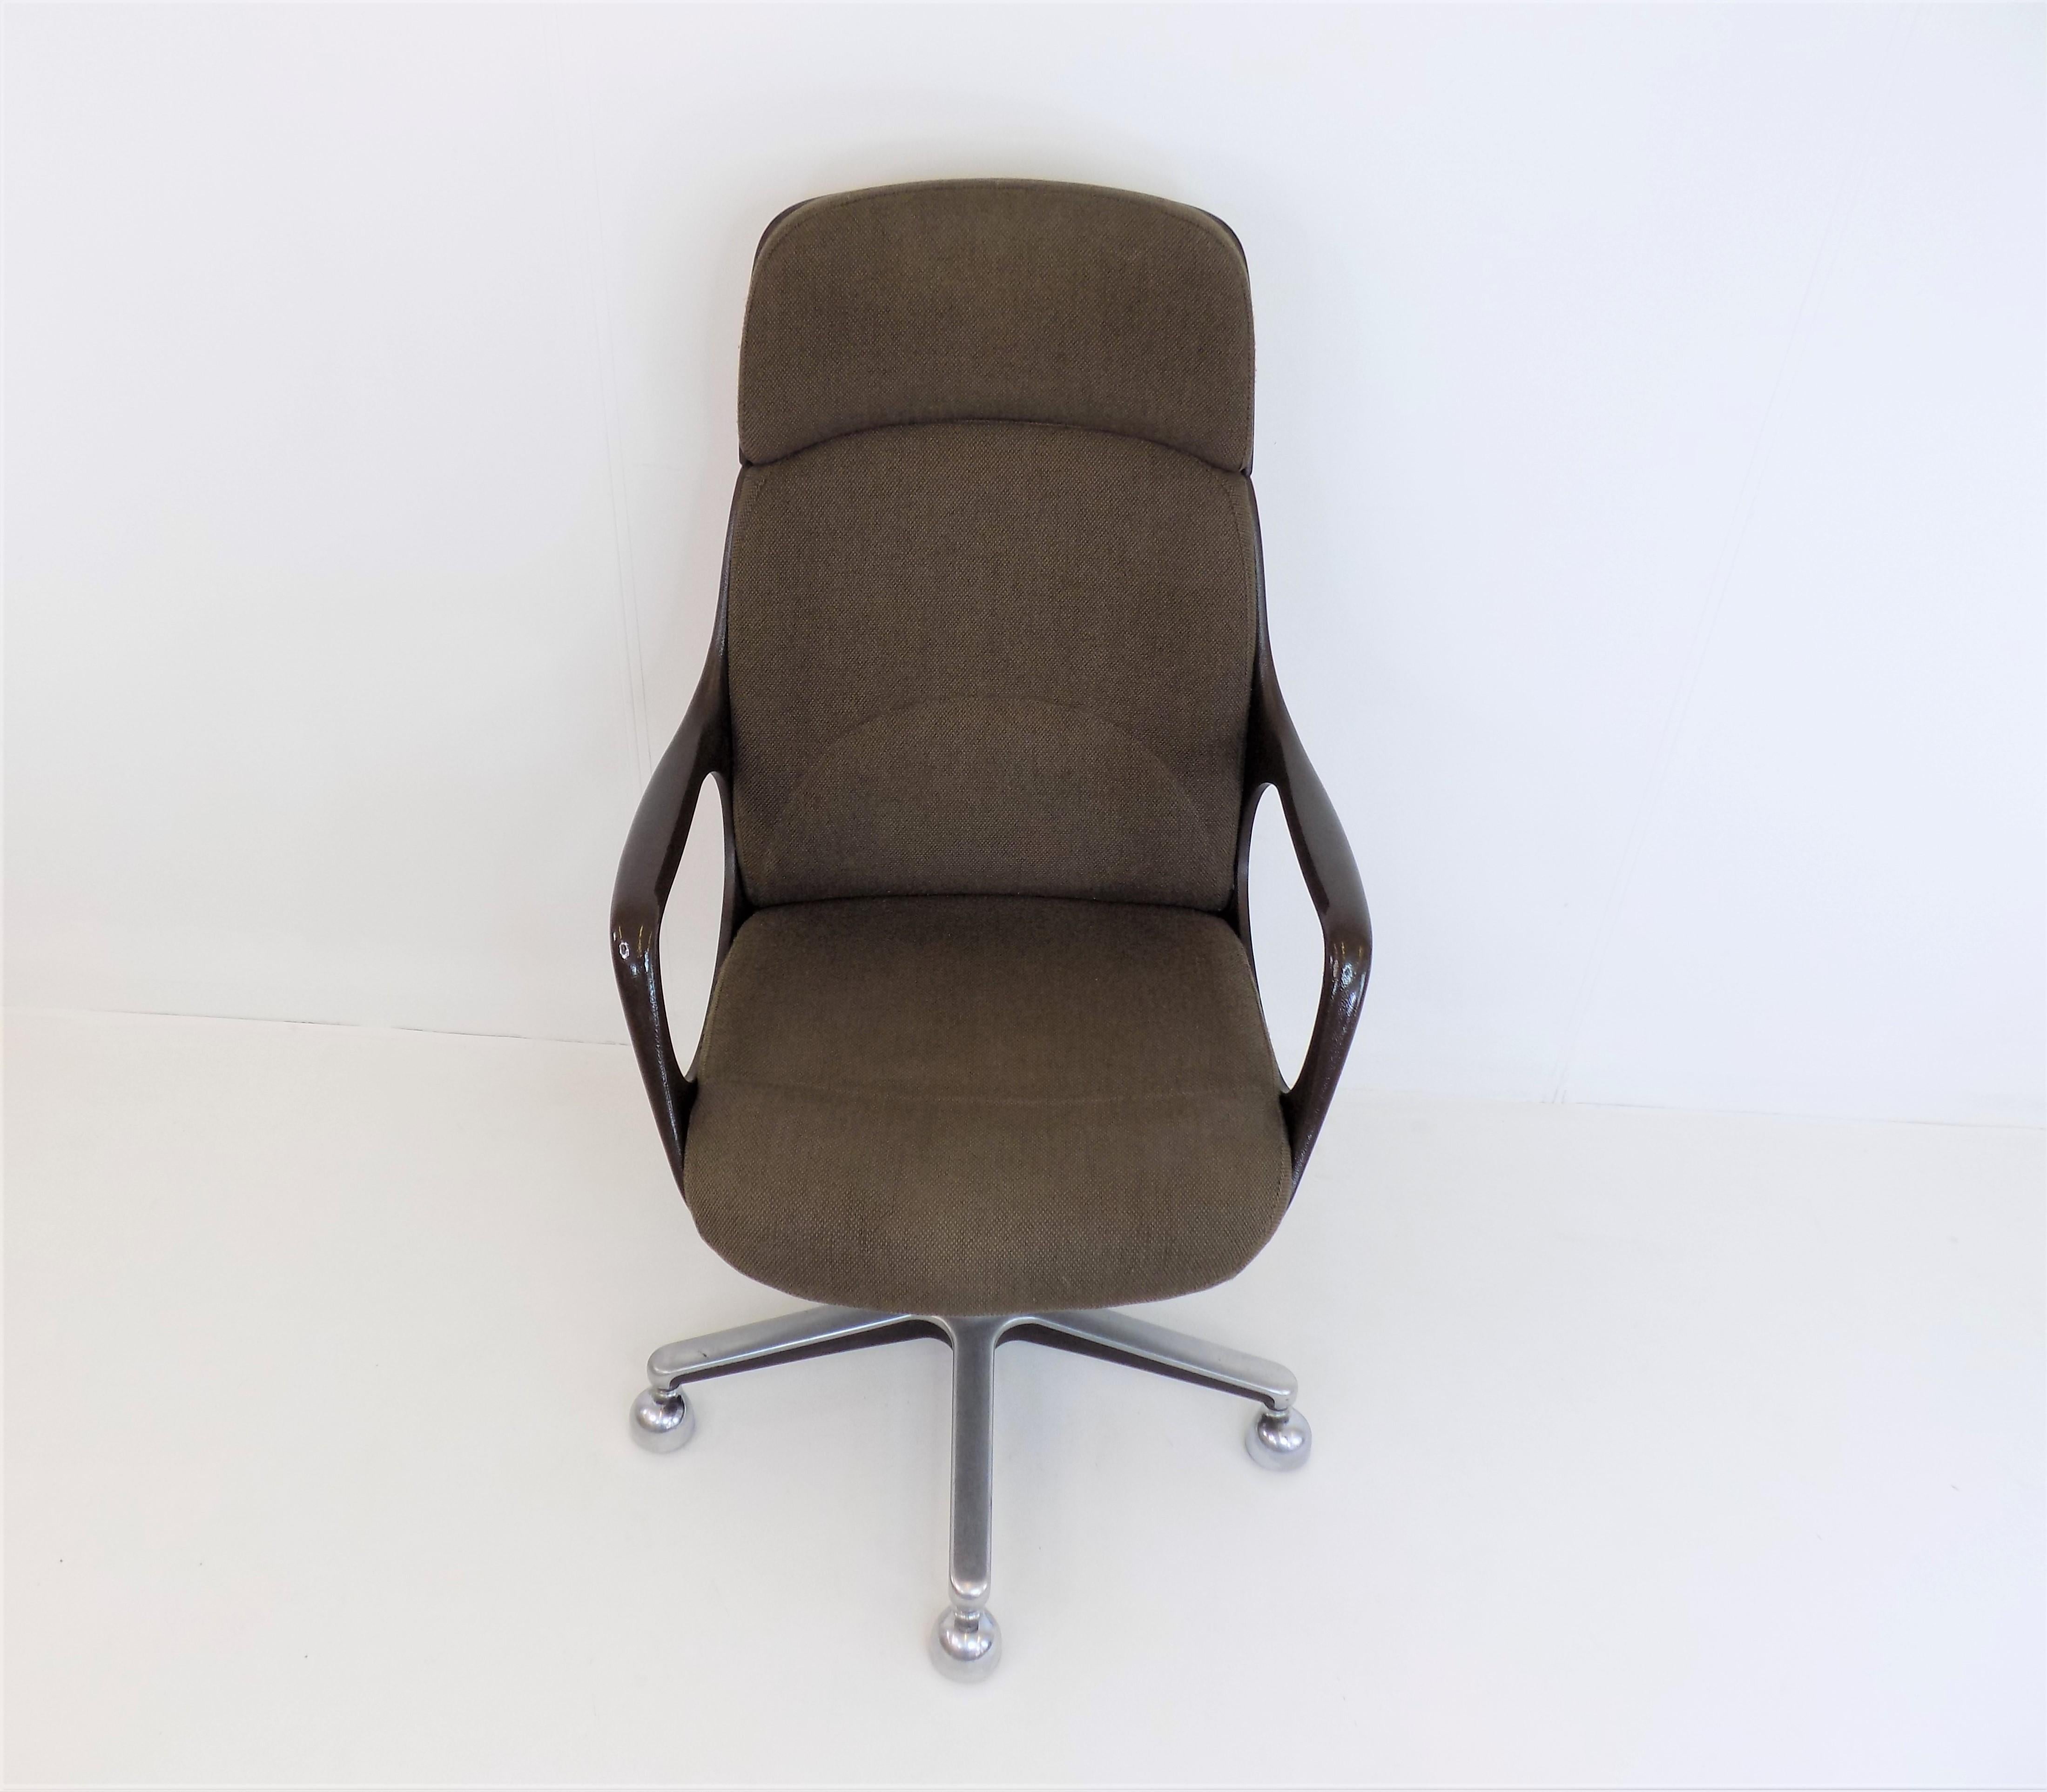 Drabert Concept Office Chair 6